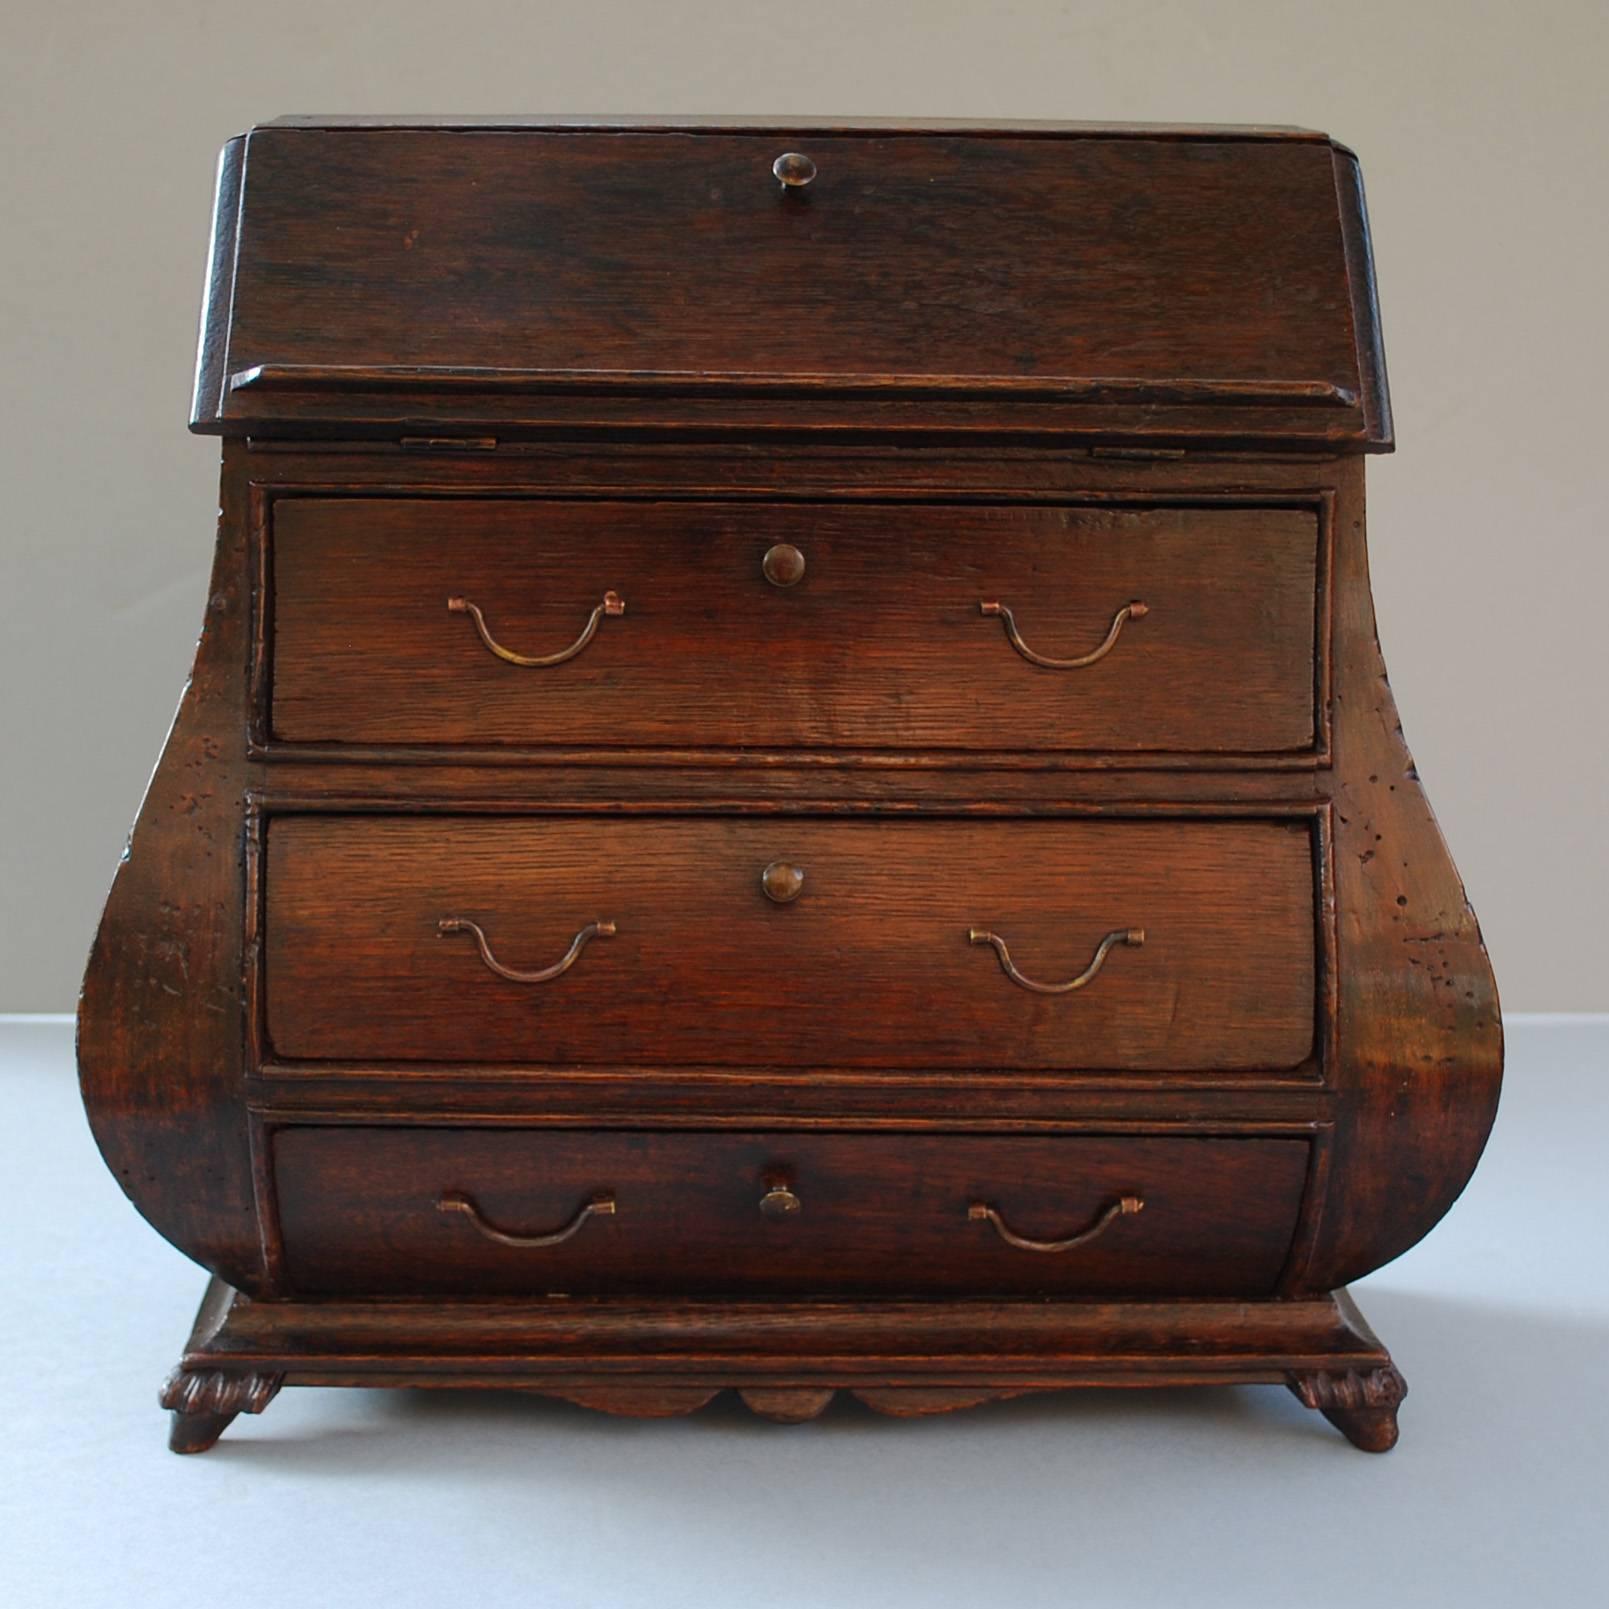 miniatur-Sekretärschrank aus Eichenholz, 19. Jahrhundert.
Dekoratives Objekt, kann als Schmuck-/Briefkasten verwendet werden.
Herkunft Niederlande, Datierung, um 1800
